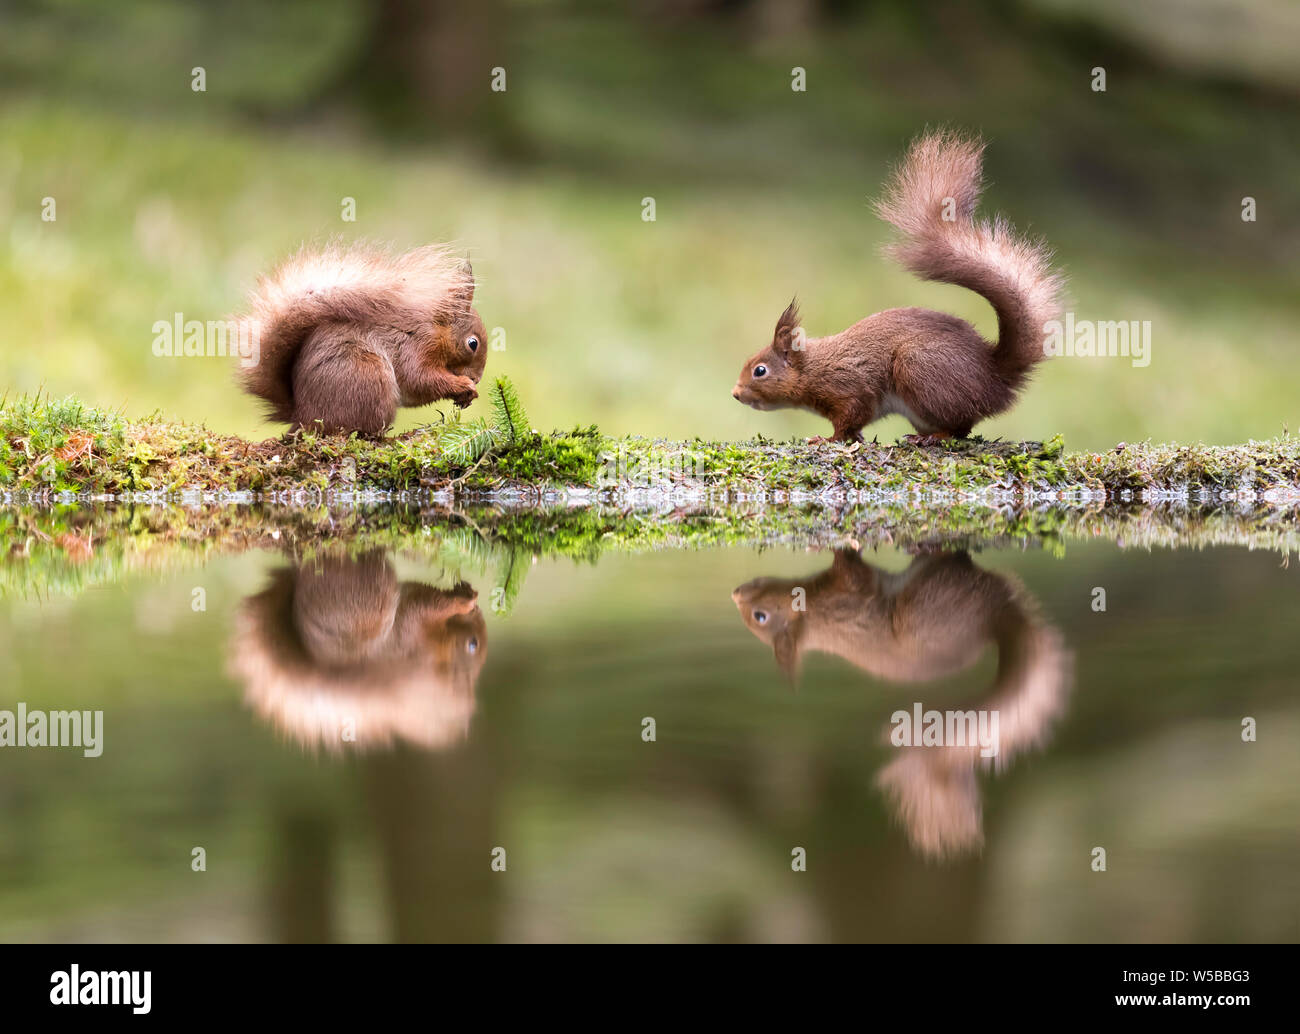 Deux écureuils face à face sur le côté d'une piscine et traduit parfaitement. L'un des écureuils est de manger une noix pendant que l'autre regarde sur Banque D'Images